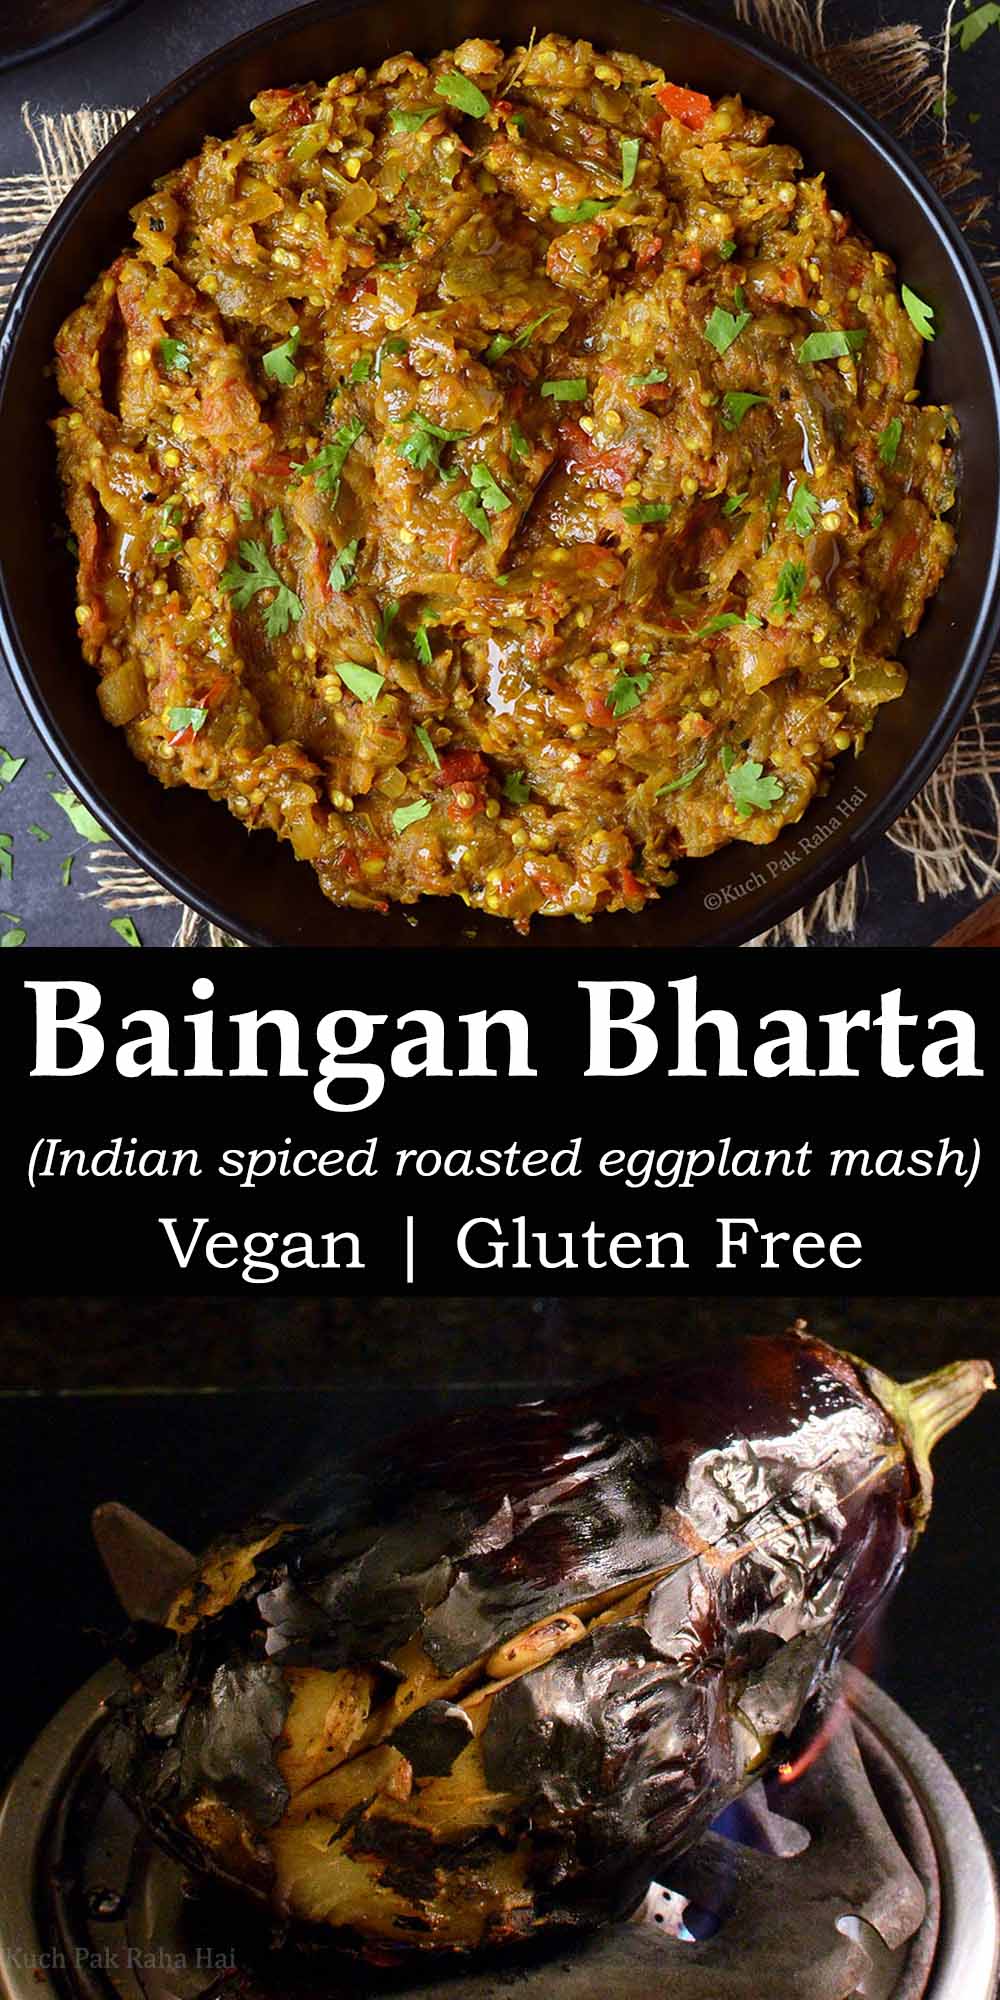 Baingan Bharta or Indian spices roasted eggplant mash